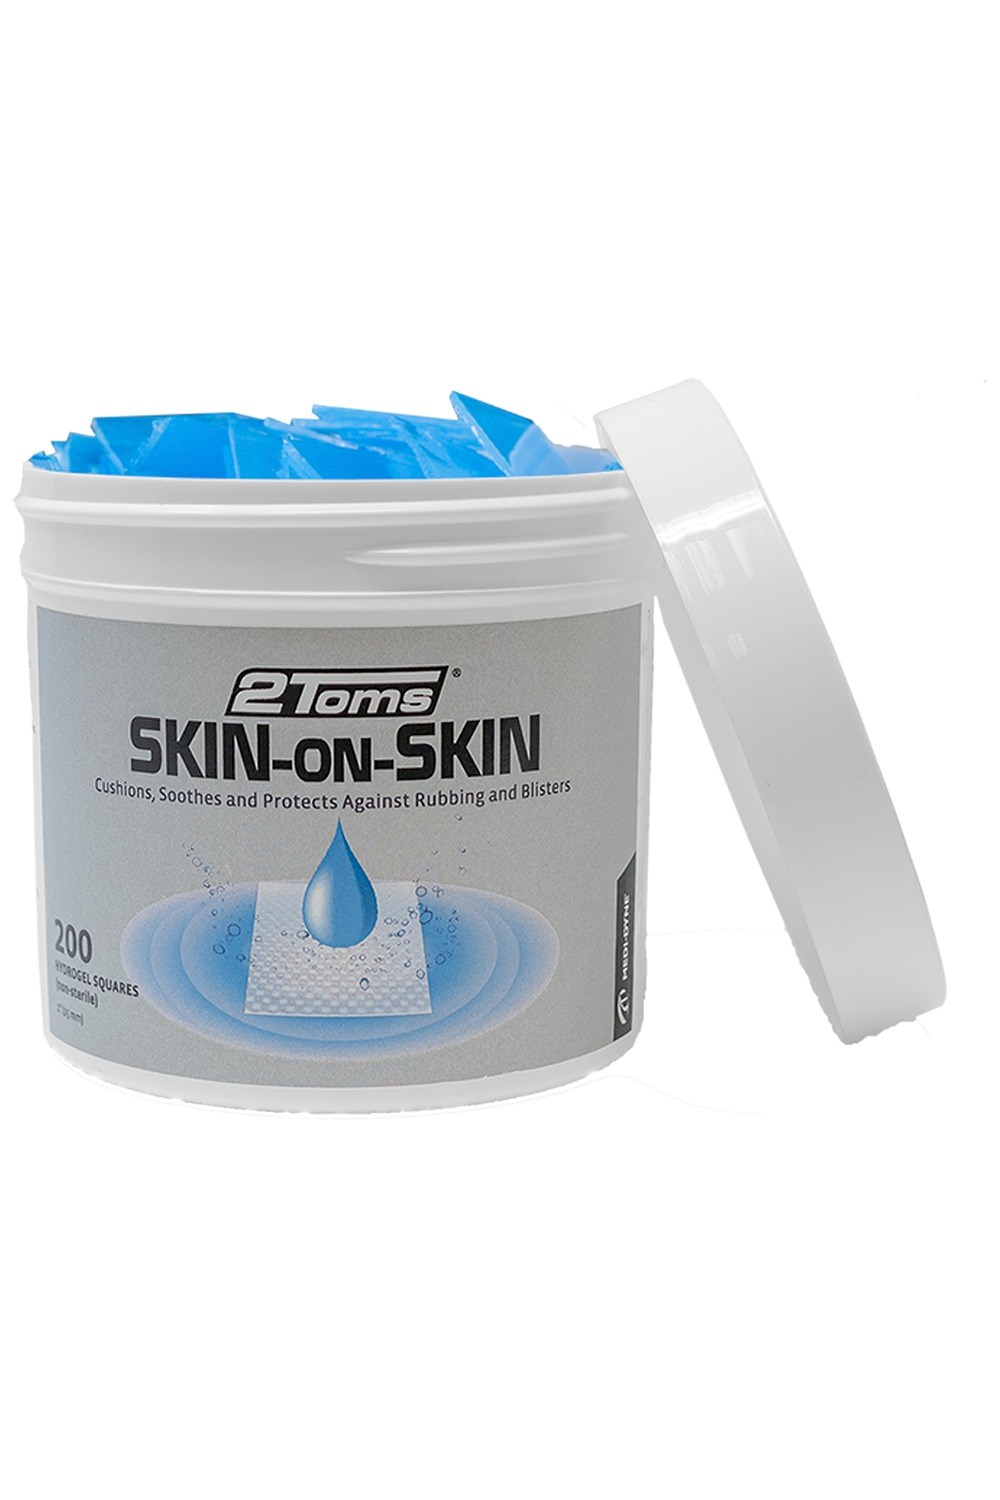 Skin-on-skin Blister Treatment 1 Squares 200 Pack -